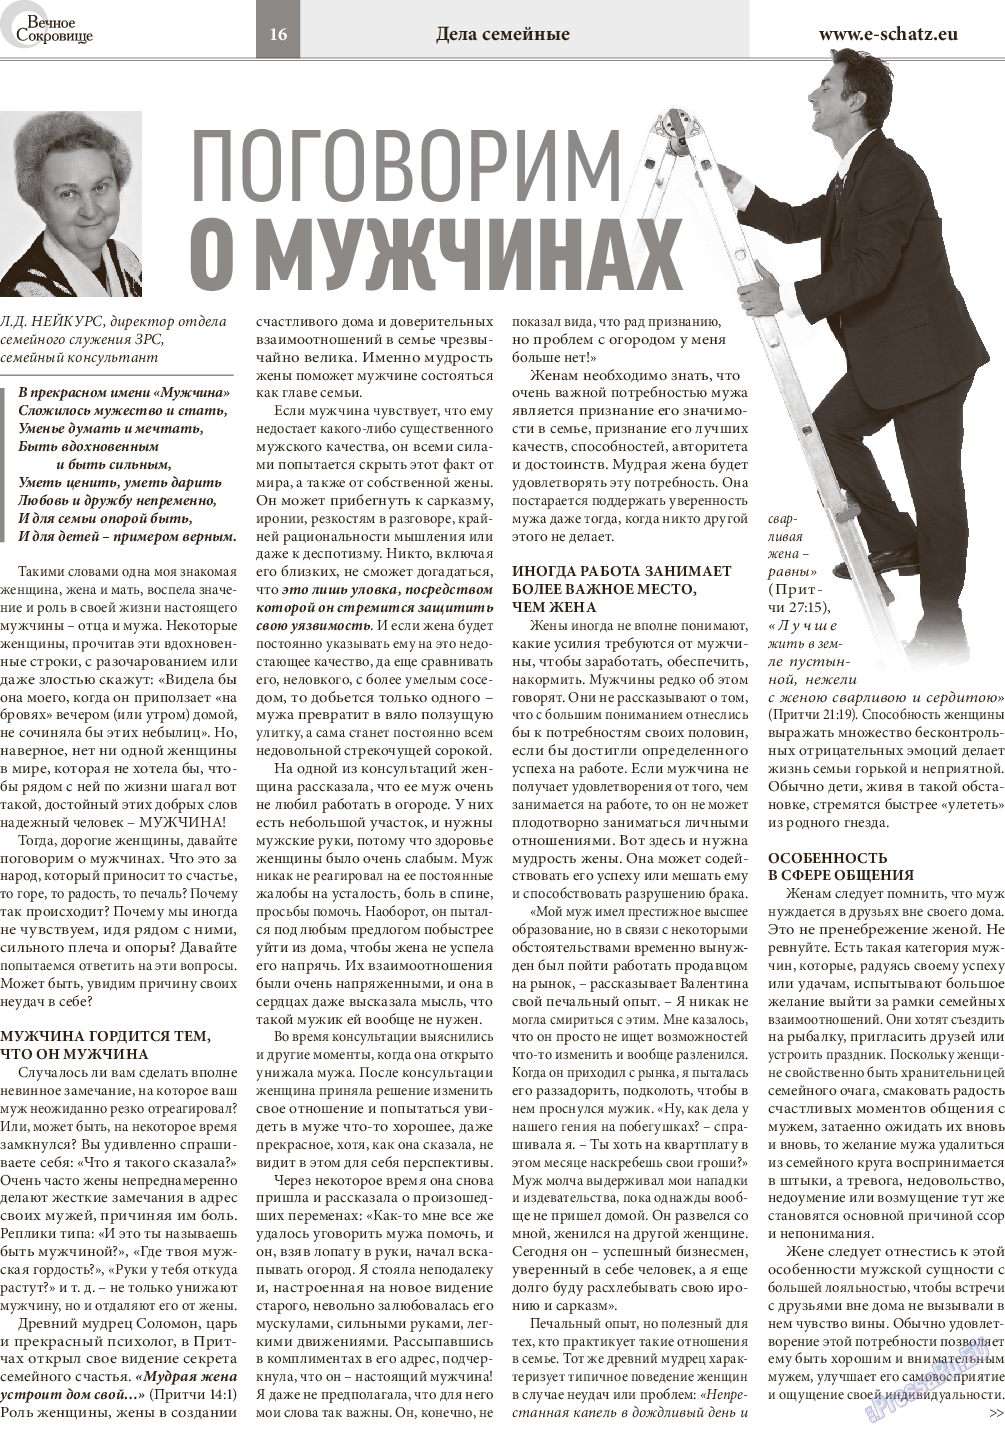 Вечное сокровище (газета). 2016 год, номер 2, стр. 16